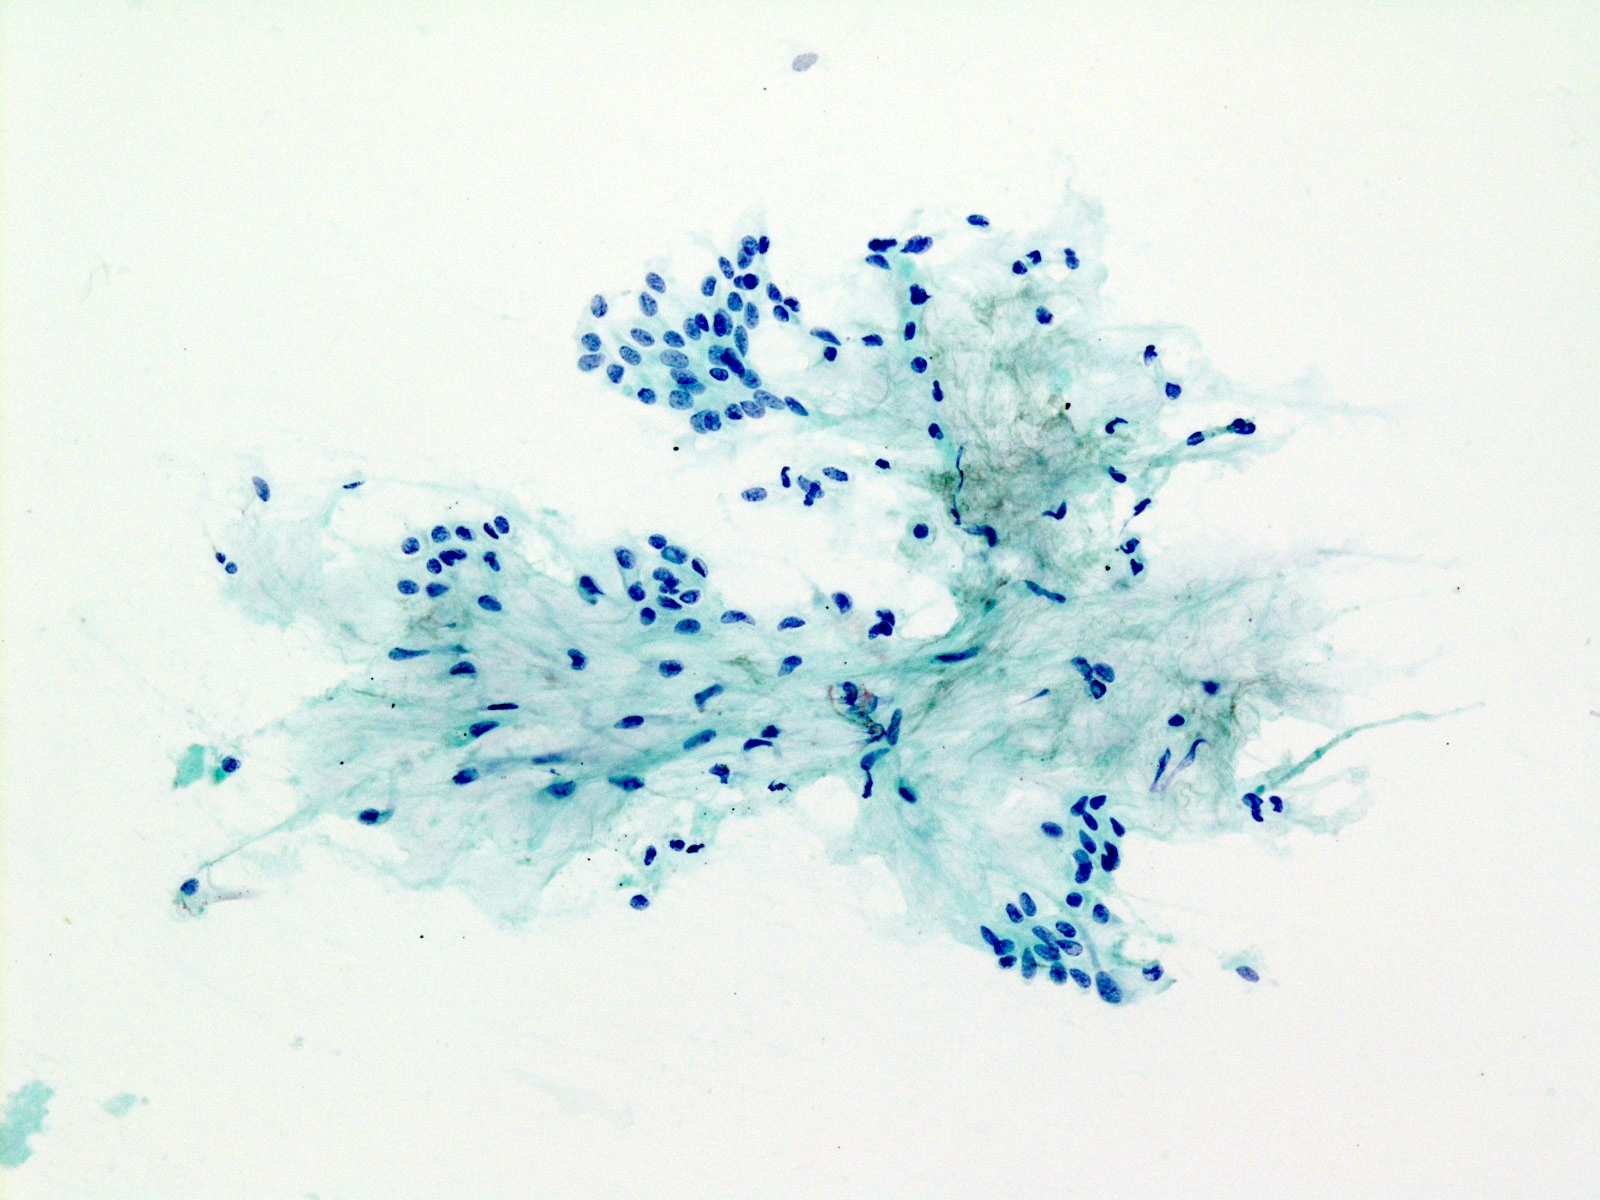 Pleomorphic adenoma (PA): fibrillary extracellular matrix